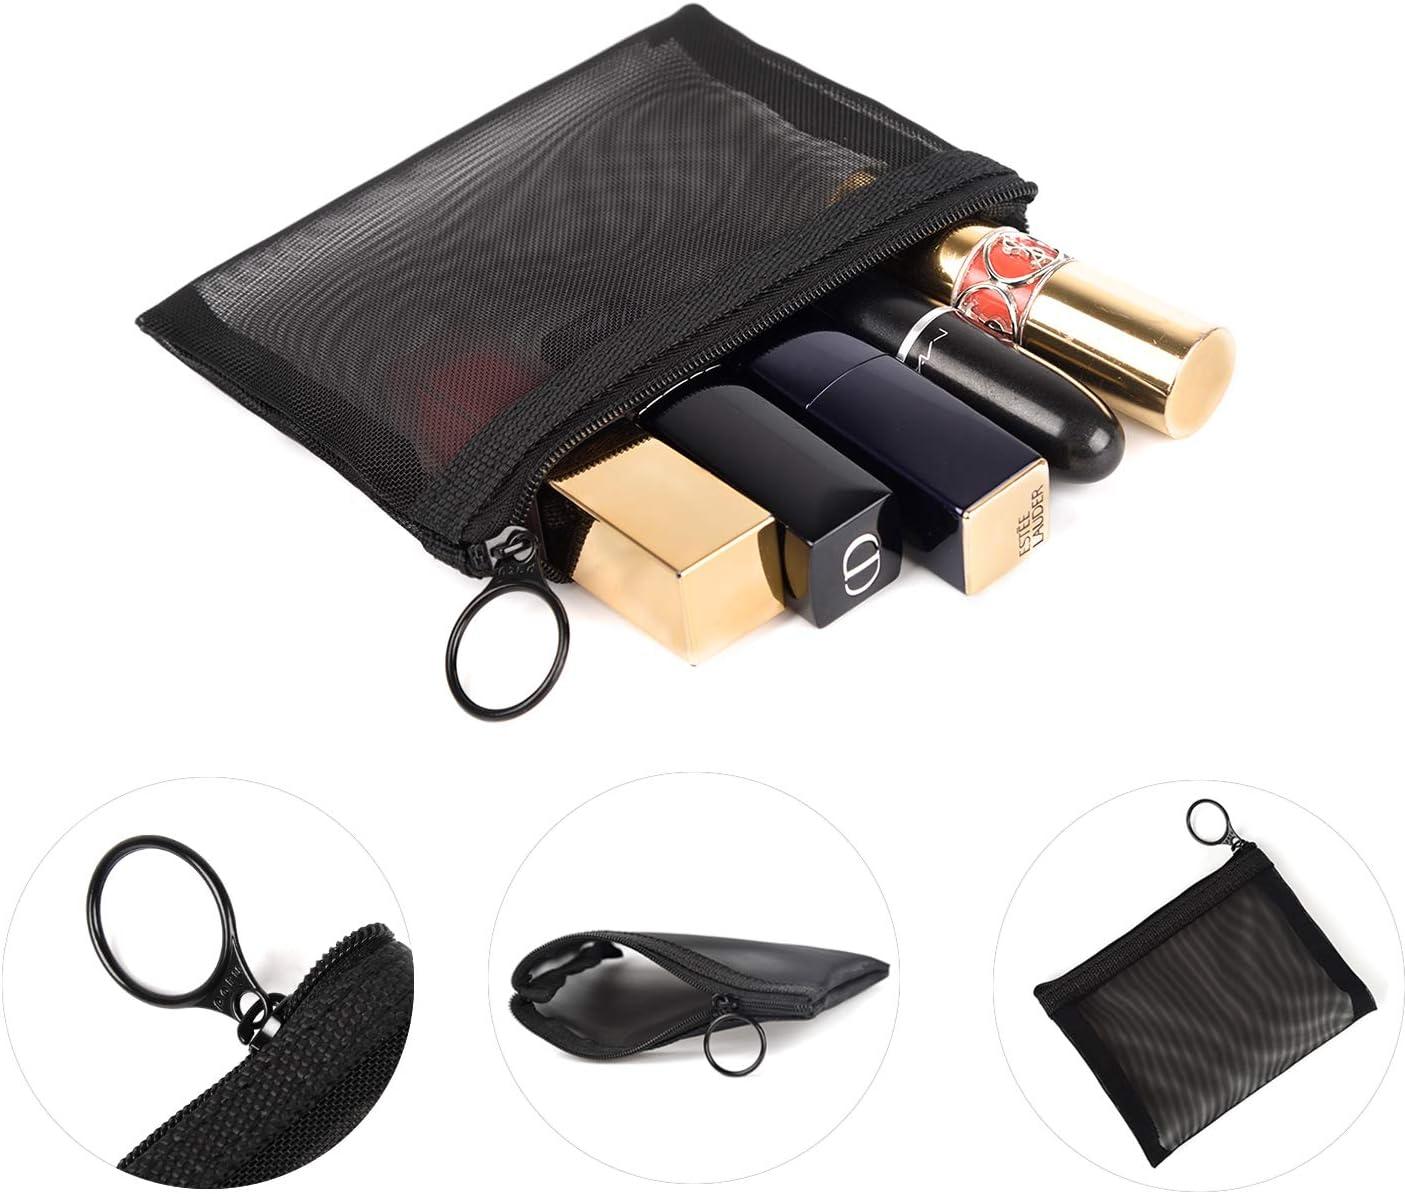 5Pcs Multipurpose Transparent Mesh Zipper Pouches Cosmetic Bag Makeup  Pouches Pencil Case Pen Holder Travel Organizers